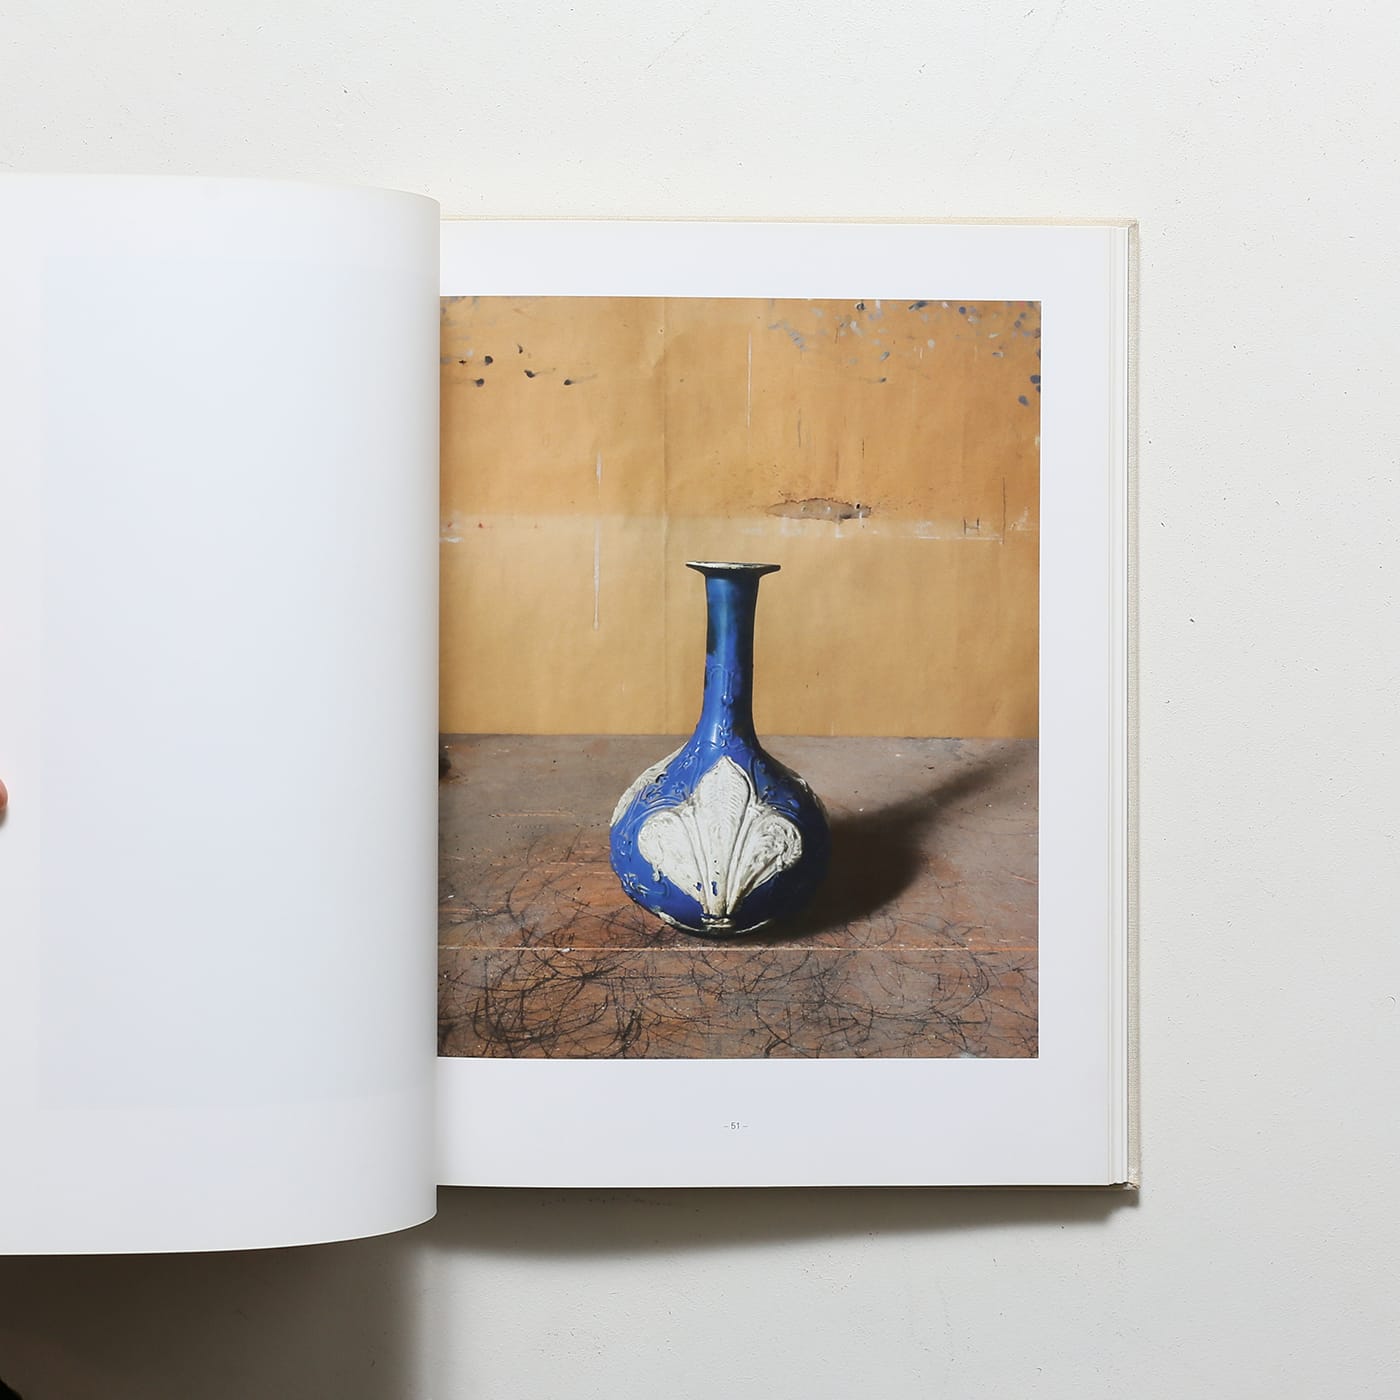 Joel Meyerowitz: Morandi’s Objects